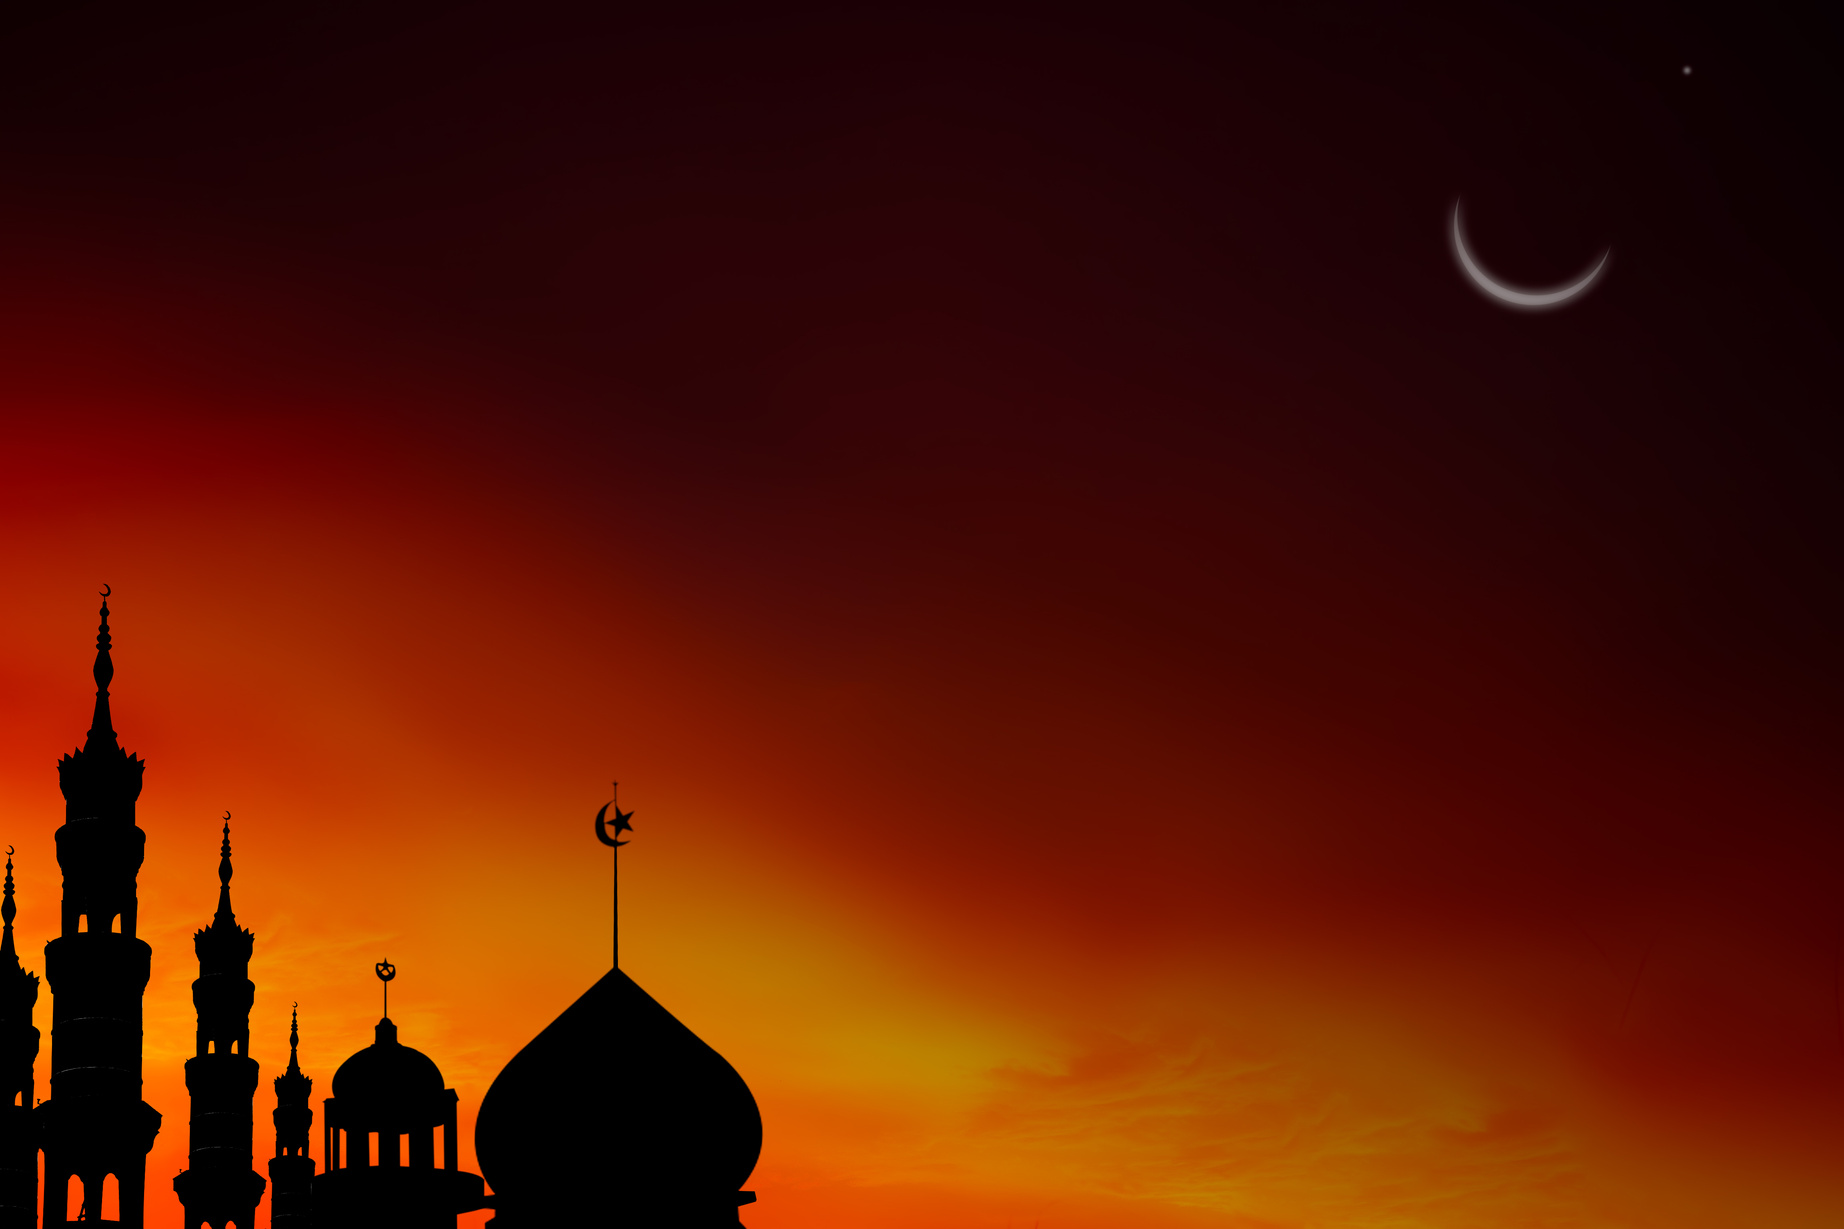 Mosques Dome on Dark Night with Crescent Moon on Black Background. New Year Muharram, Eid Al-Fitr, Eid Al-Adha. Religion Symbol Islamic Ramadan.